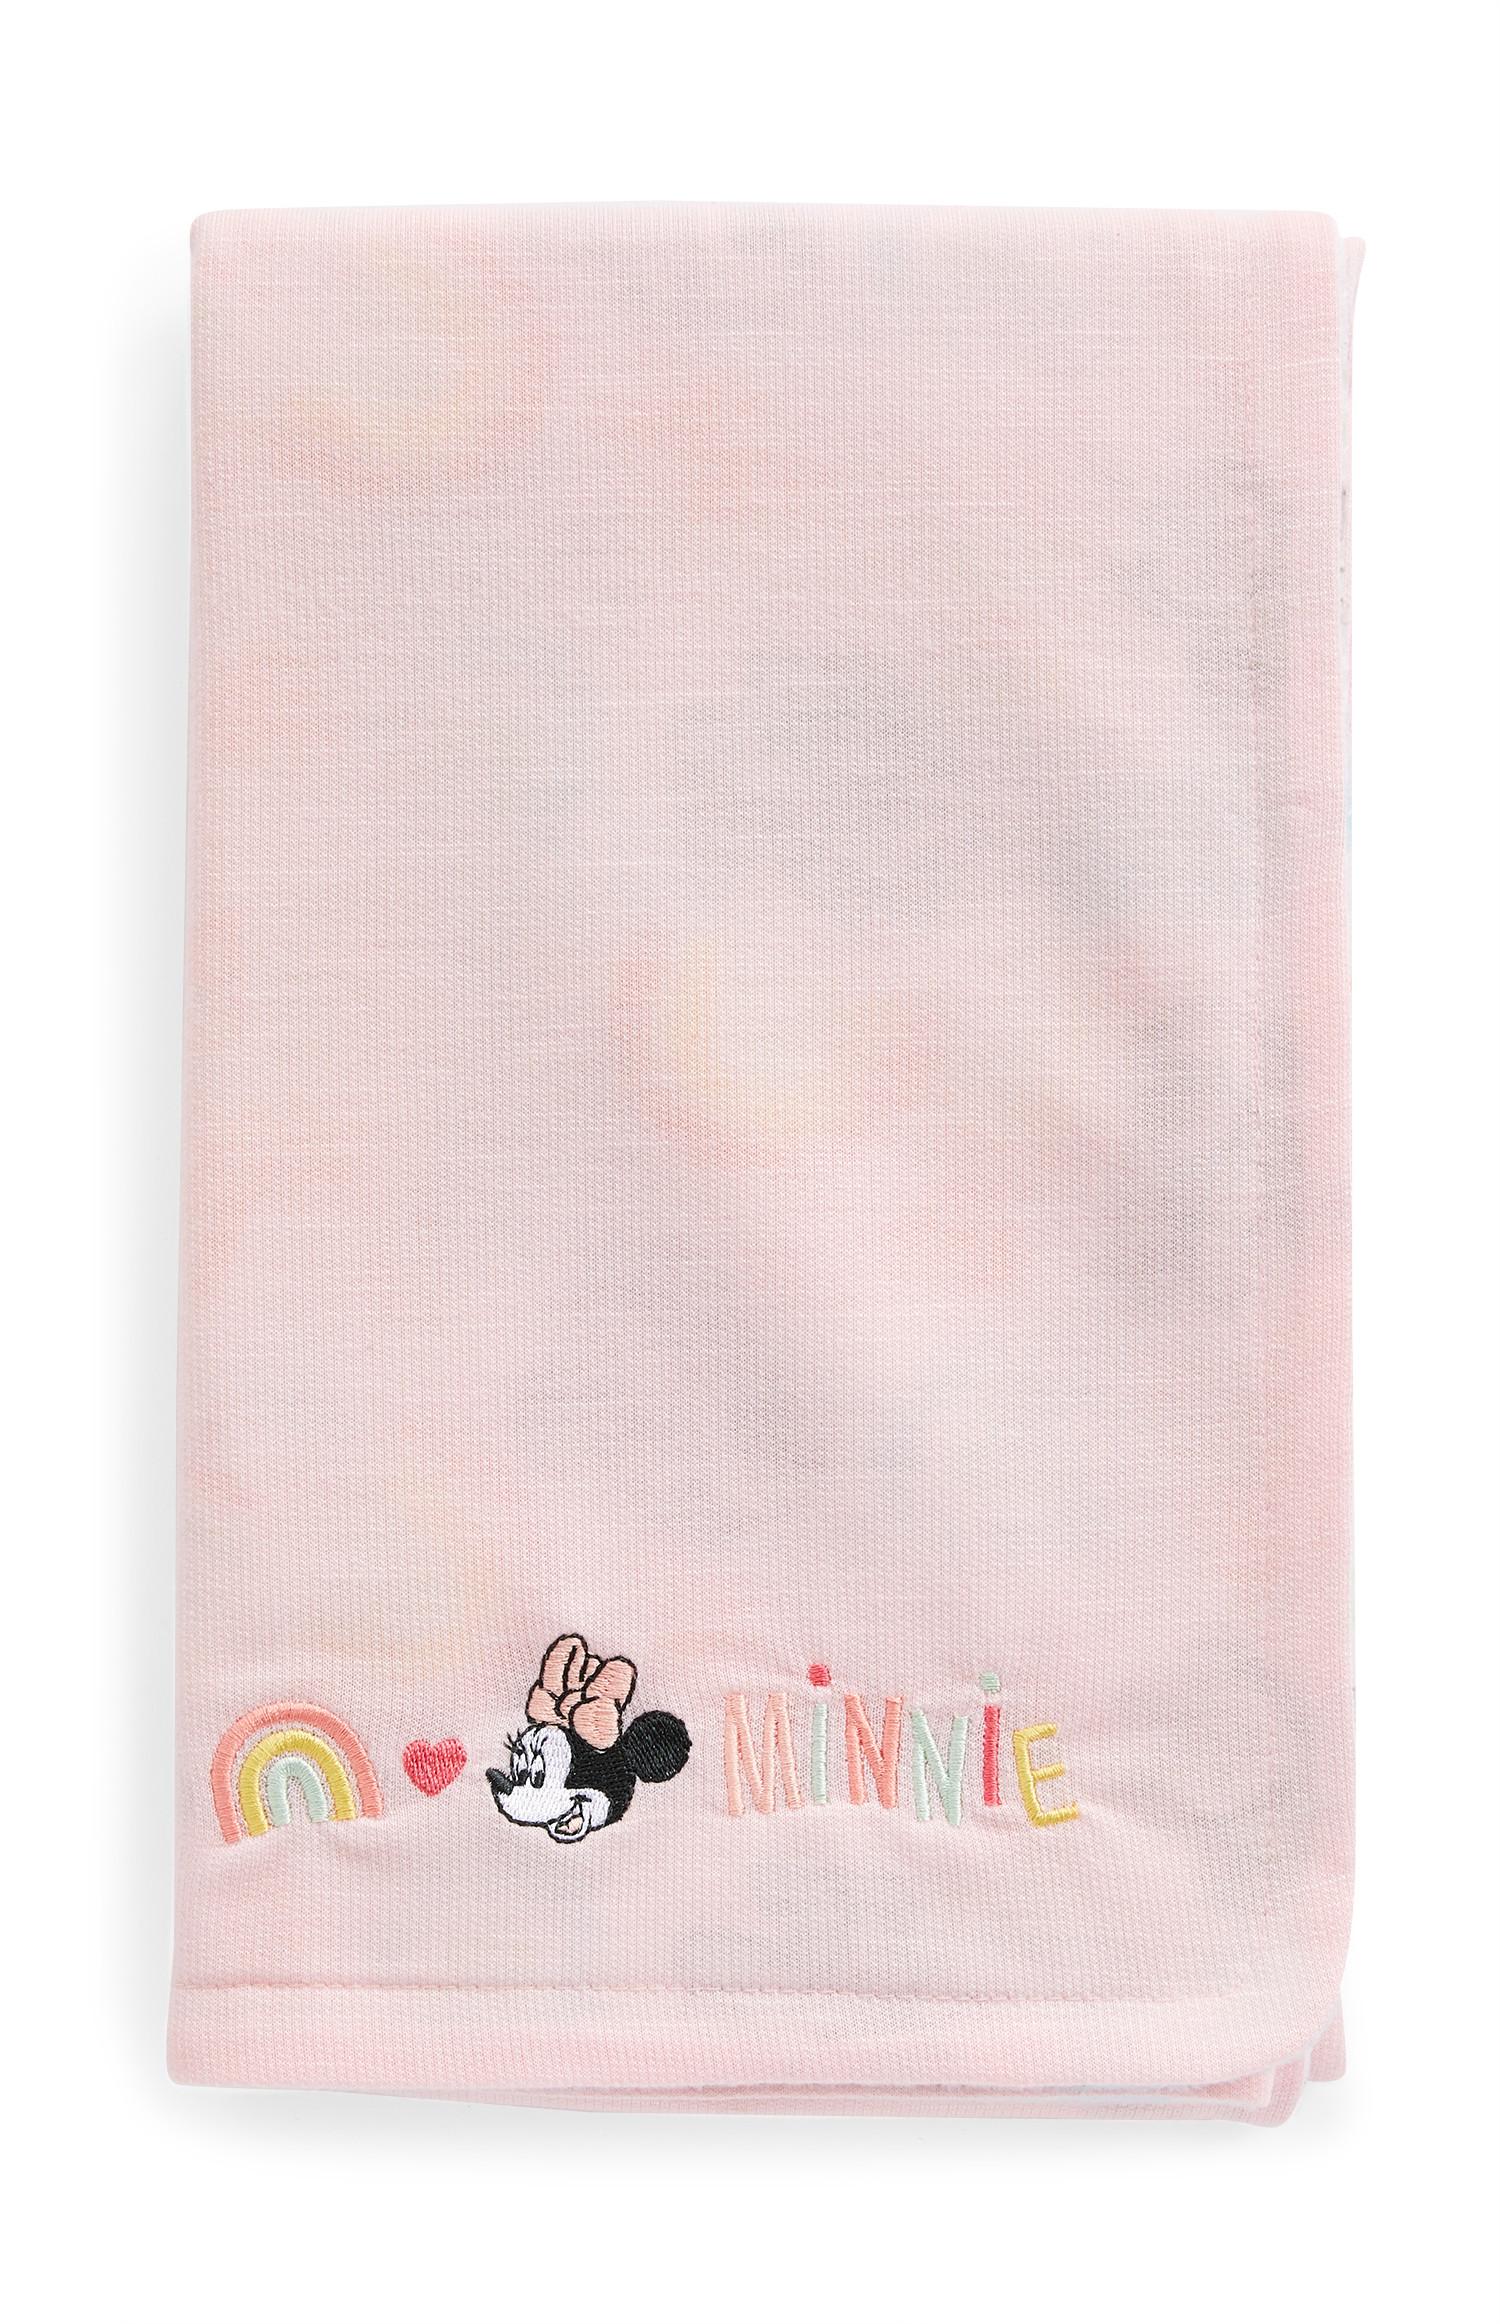 Couverture Rose Disney Minnie Mouse Bebe Accessoires Bebe Vetements Bebe Et Nouveau Ne Mode Enfant Tous Les Produits Primark Primark Belgique Francaise